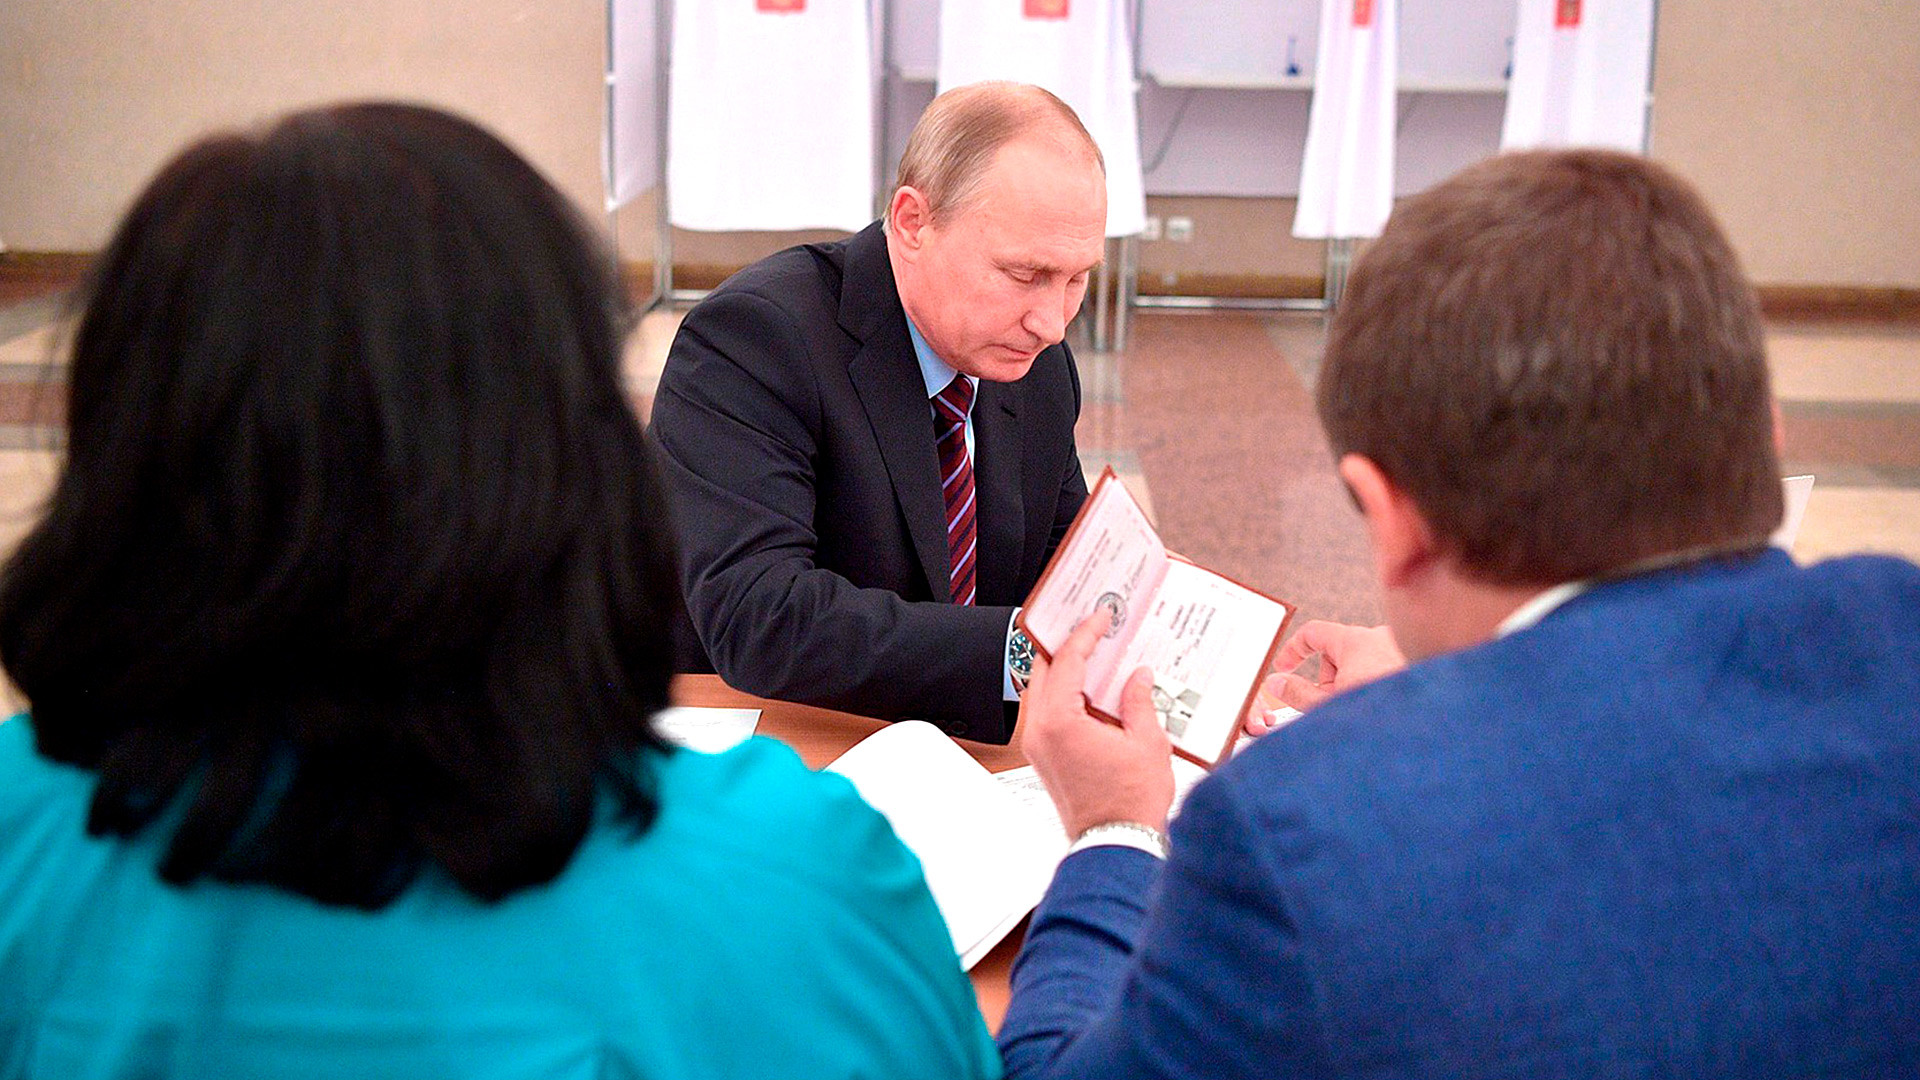 　昨年ロシアで実施された地方議会選挙で、ウラジーミル・プーチン大統領のパスポートが、目利きのリポーターによって撮影された。現在の大統領のパスポートをちょっとだけお見せしよう。